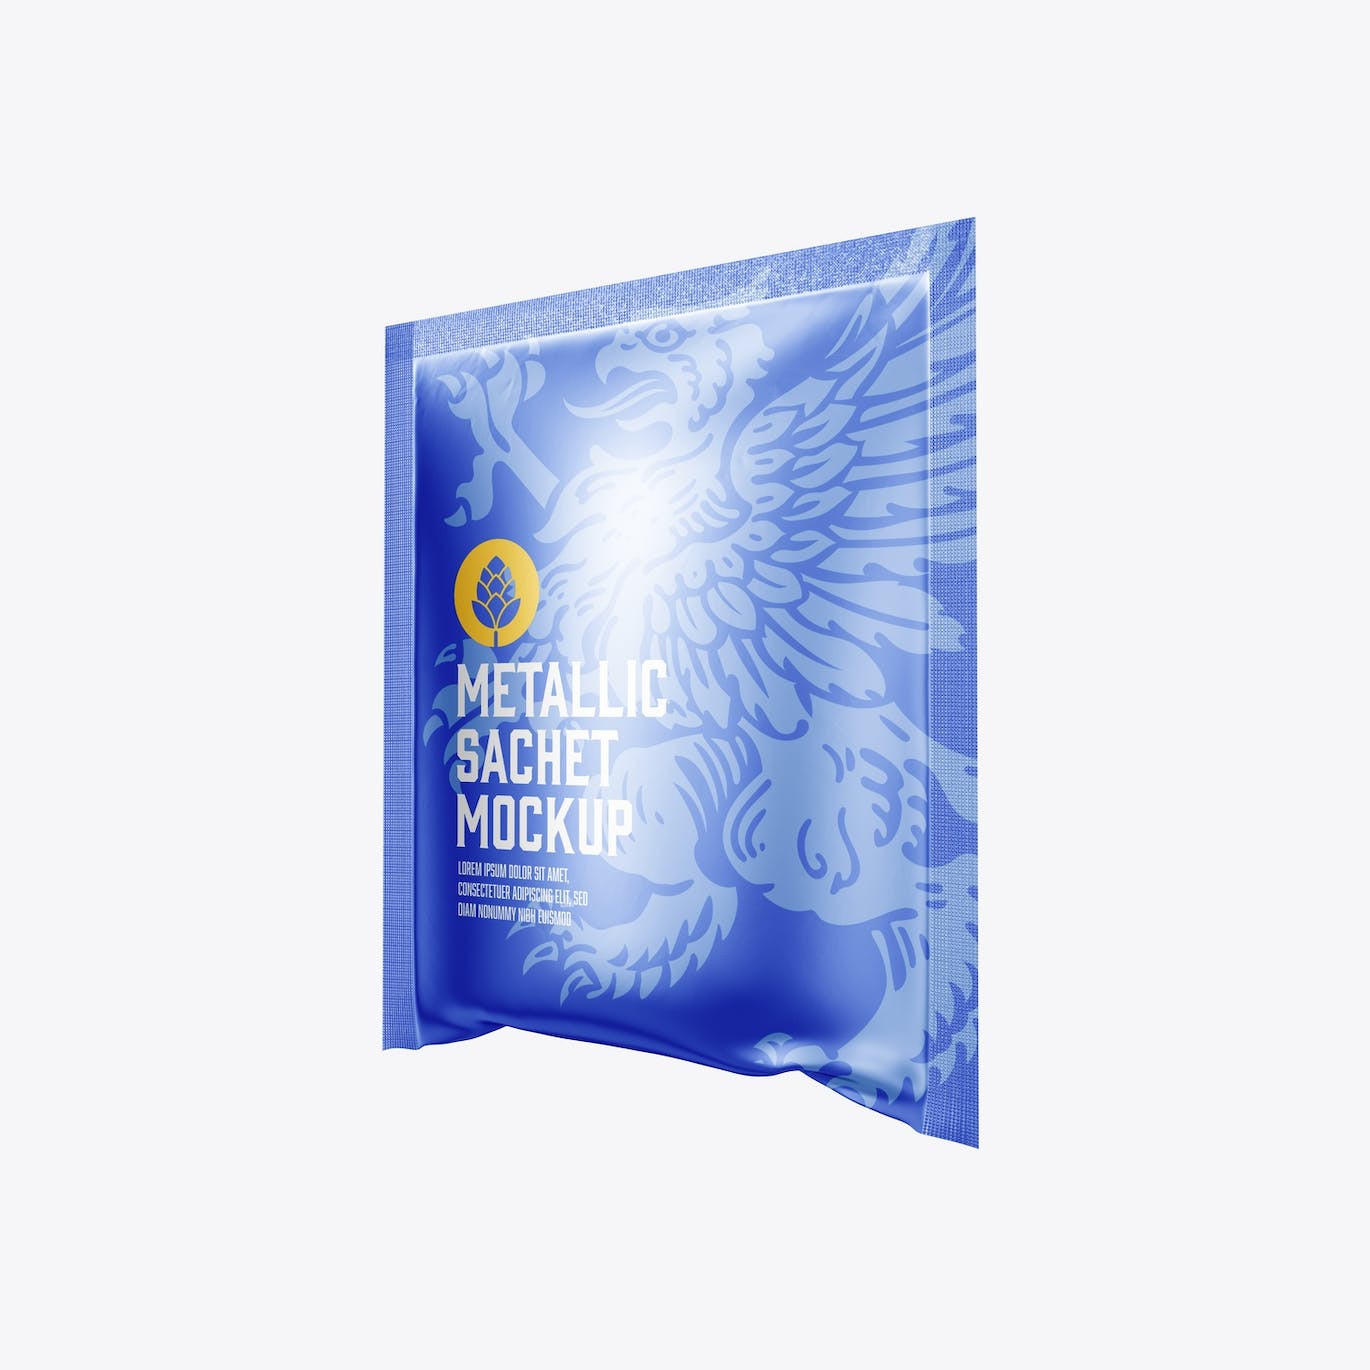 金属材质包装袋设计样机图 Metallic Sachet Mockup 样机素材 第4张